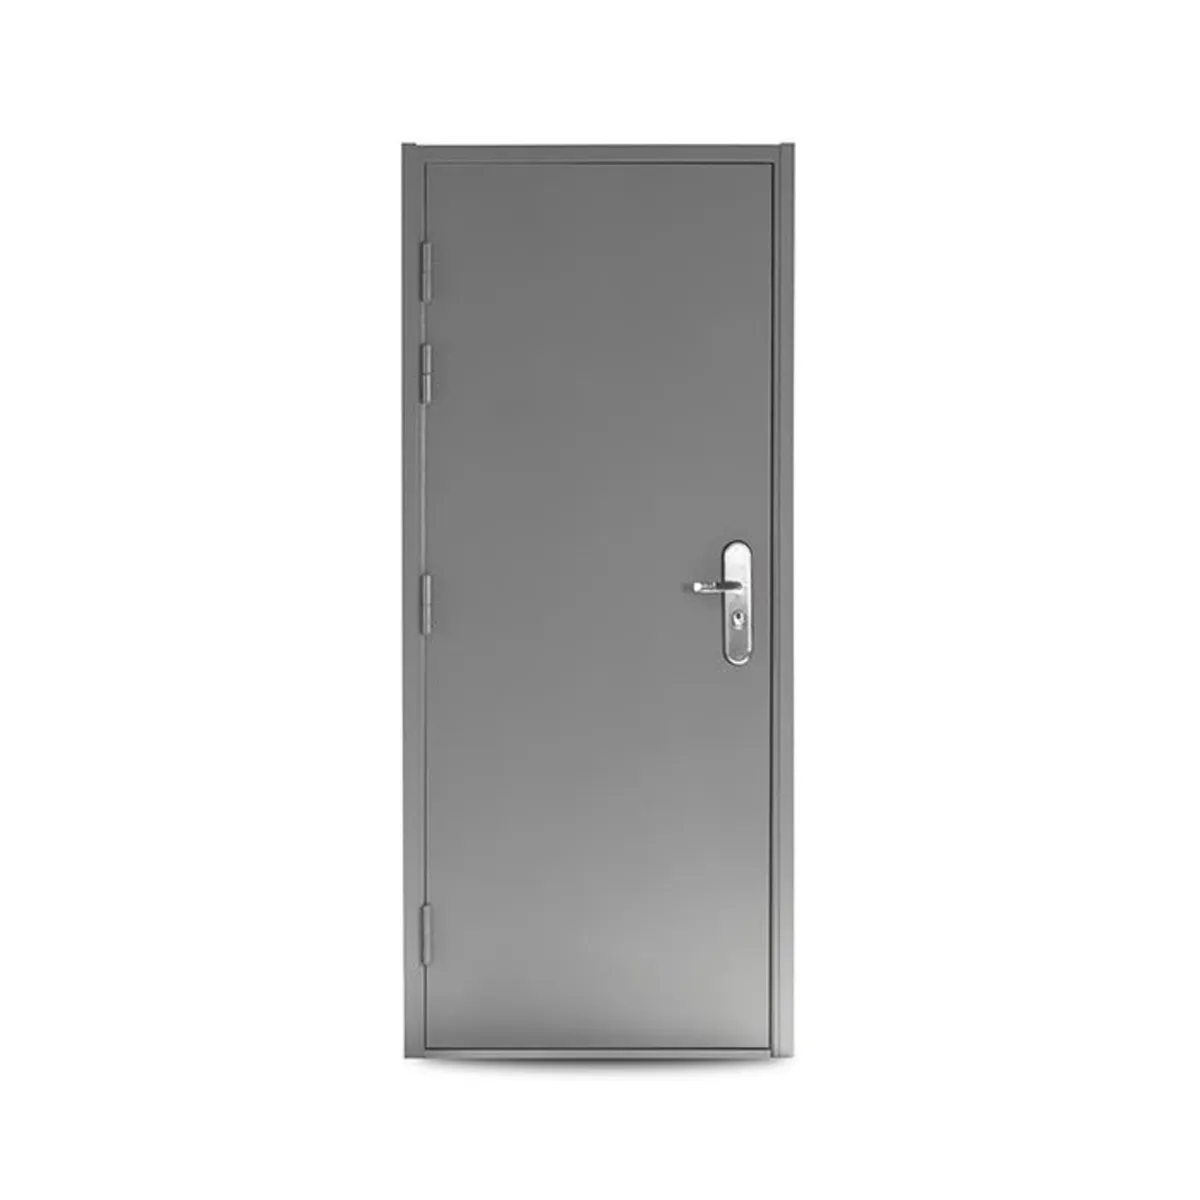 Heavy Duty Steel Security Doors - Image 1